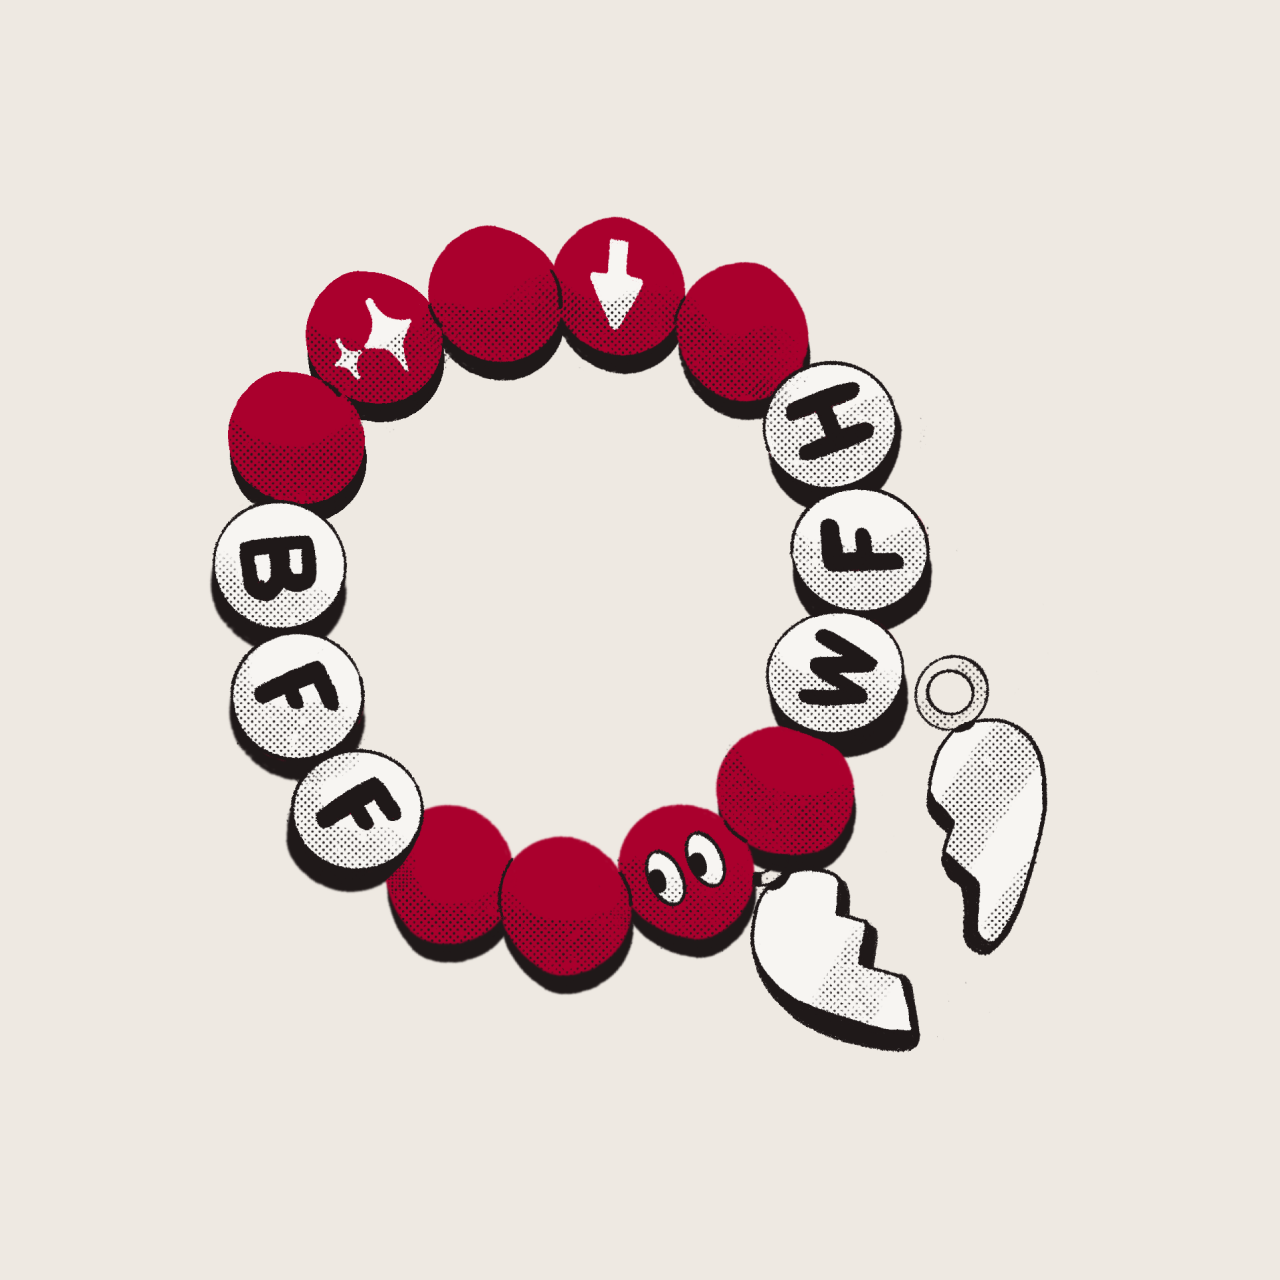 Immagine di un braccialetto dell'amicizia con perline con le lettere "BFF" e "WFH"